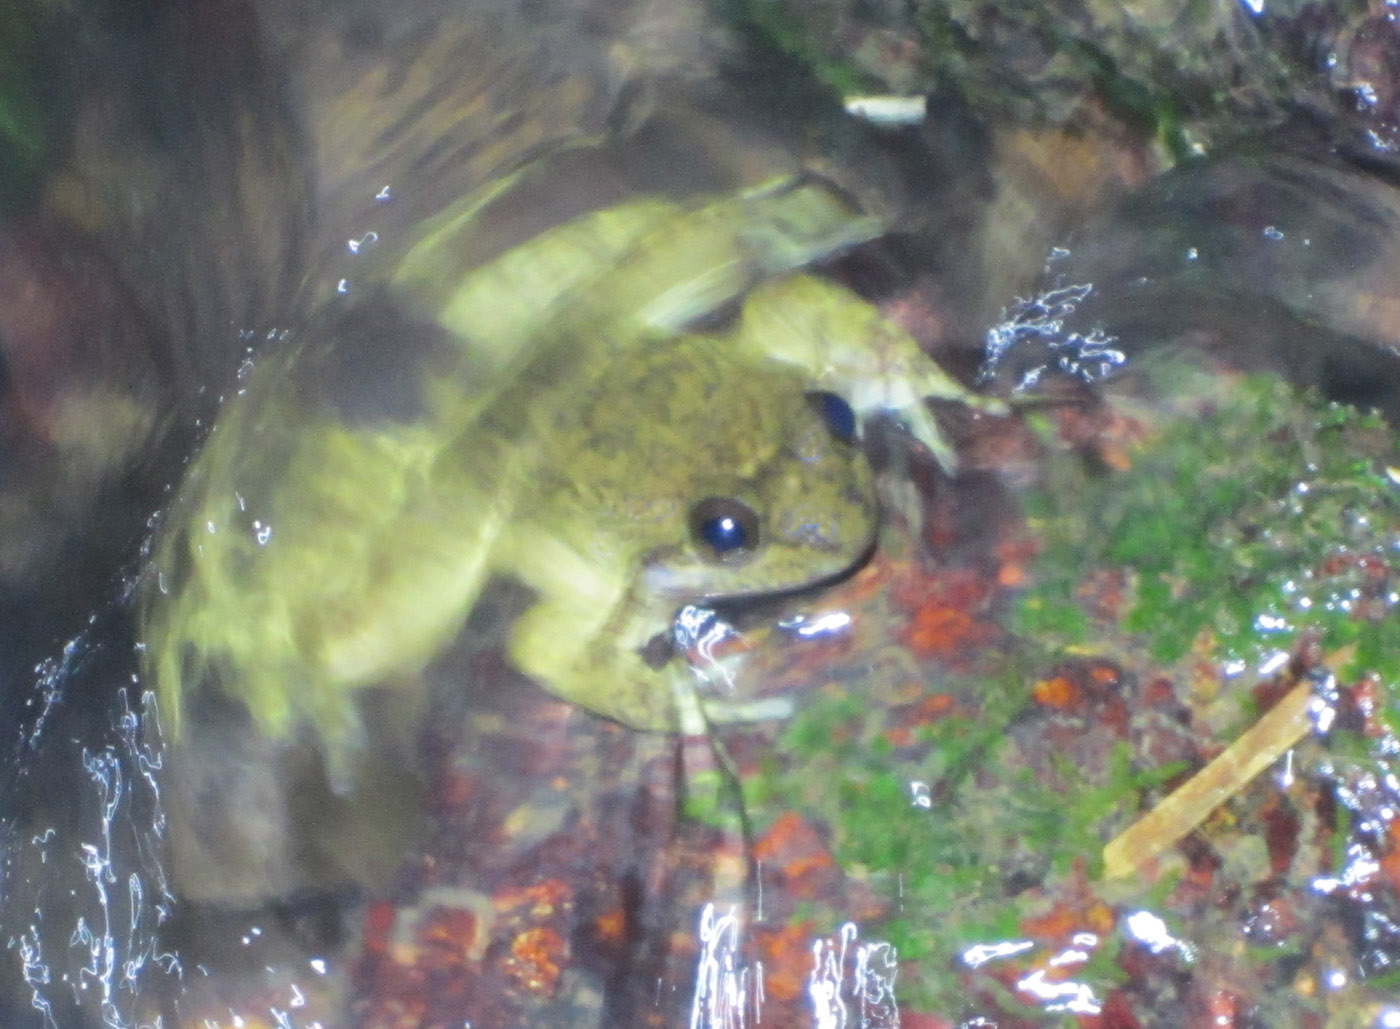 Togo Slippery Frog